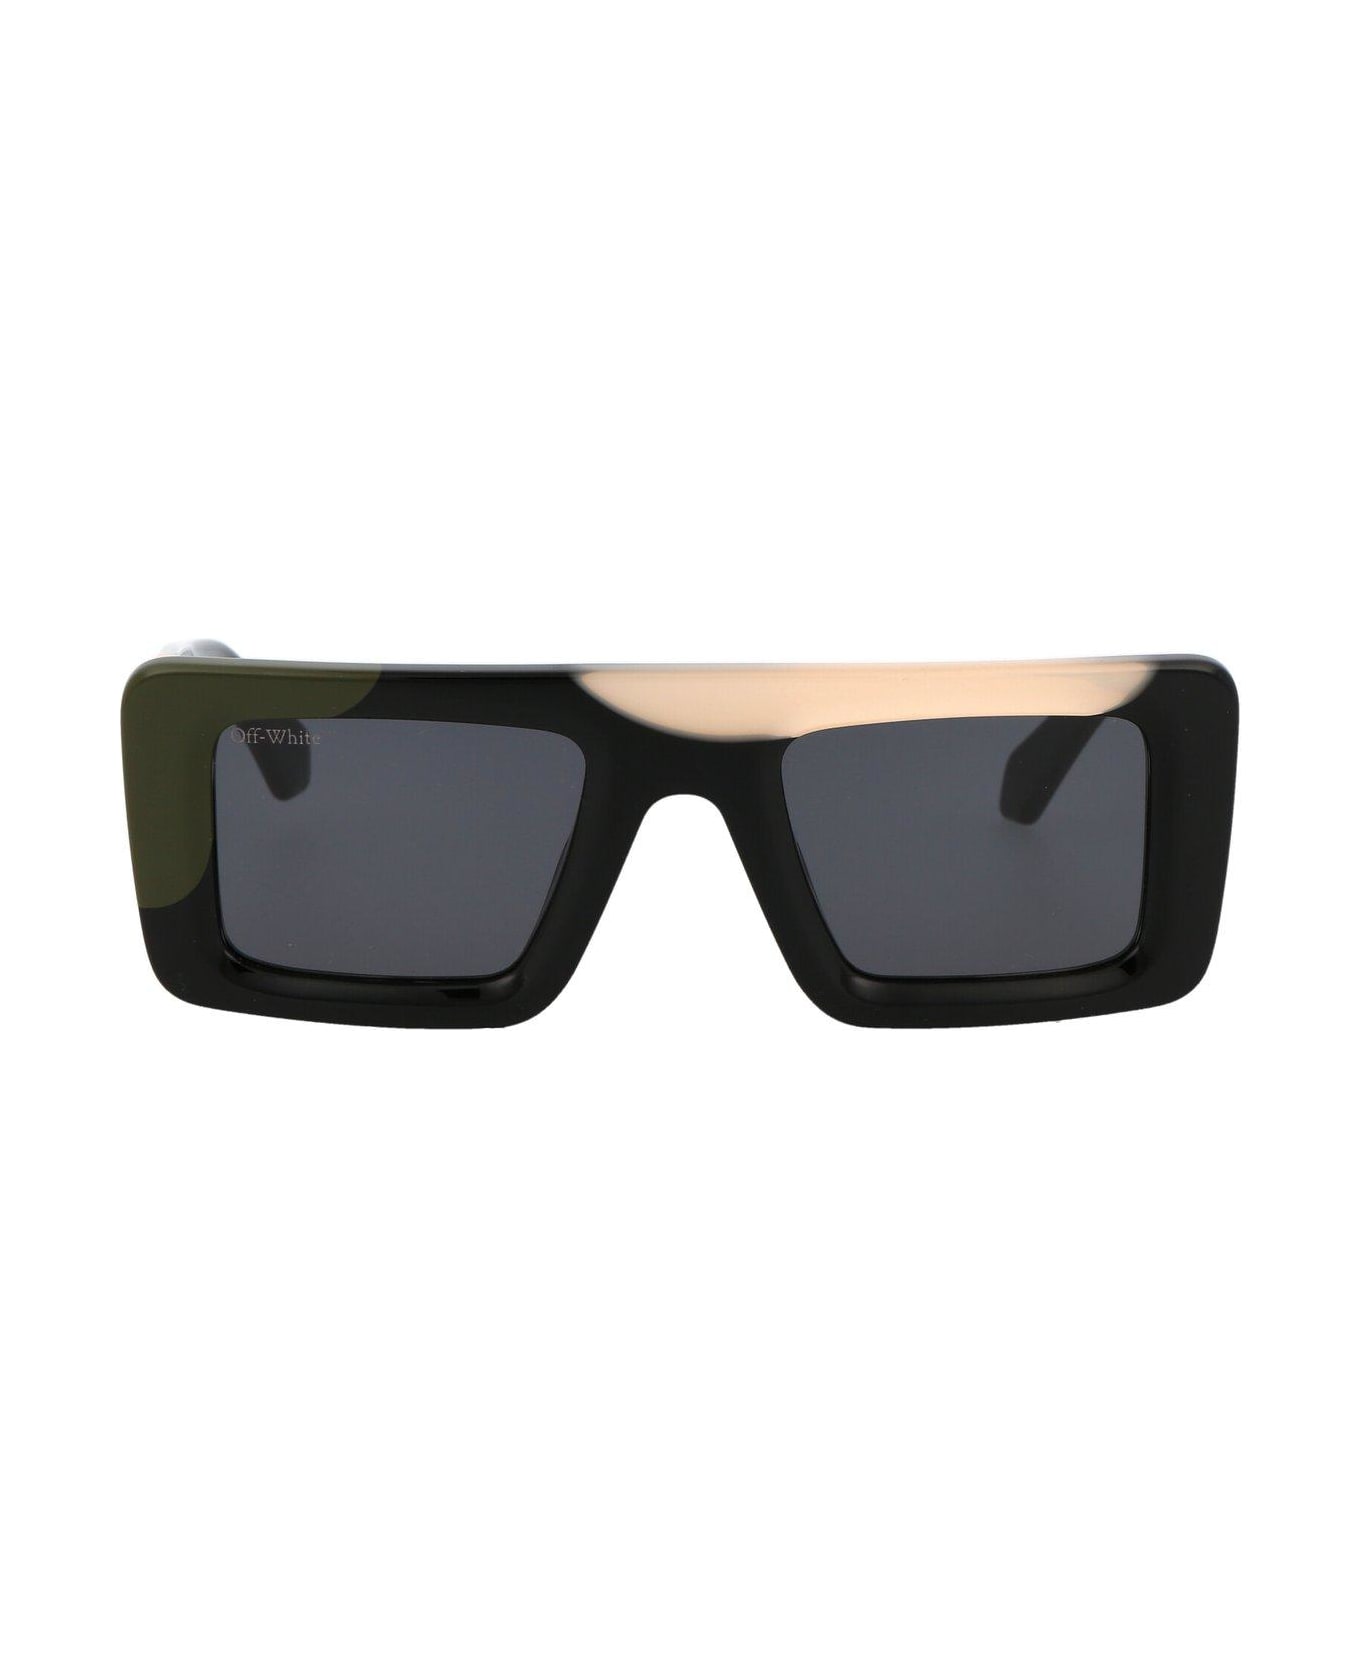 Off-White Seattle Sunglasses - 1207 MULTICOLOR